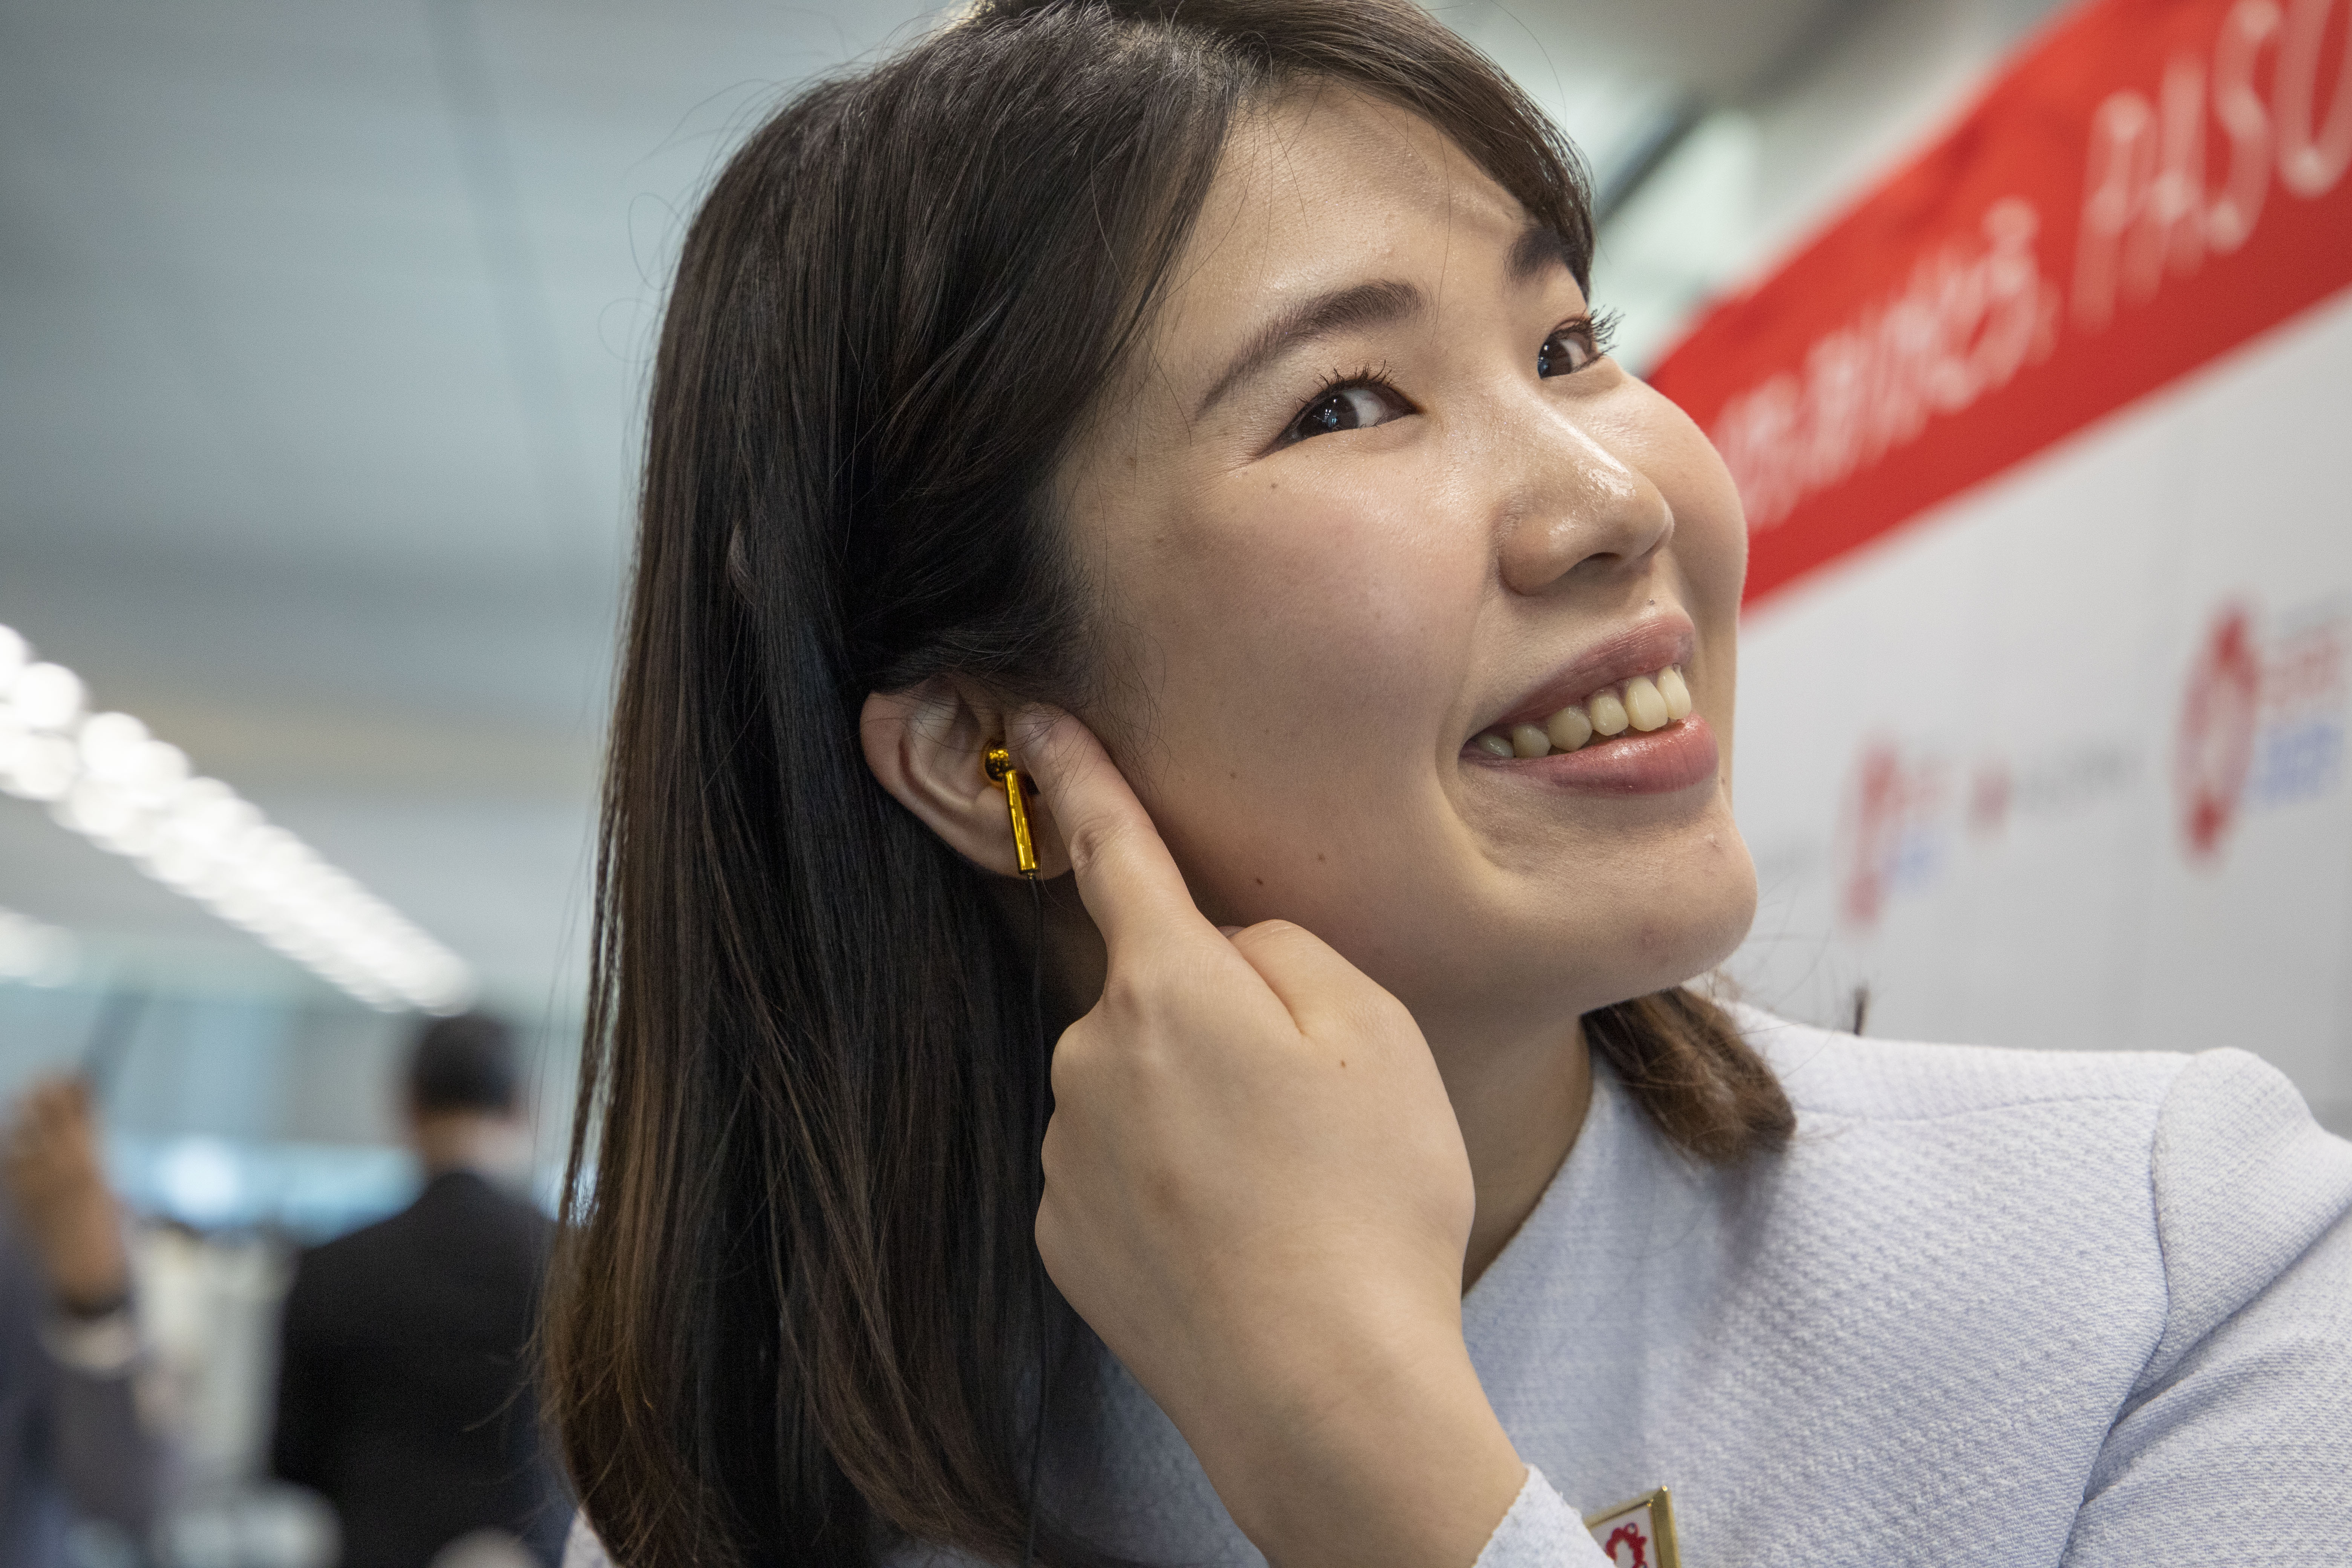  万博で使用される軟骨伝導イヤホンについての記者発表会が行われました。  The press conference was held on the cartilage electric earphones to be used at the Expo. 